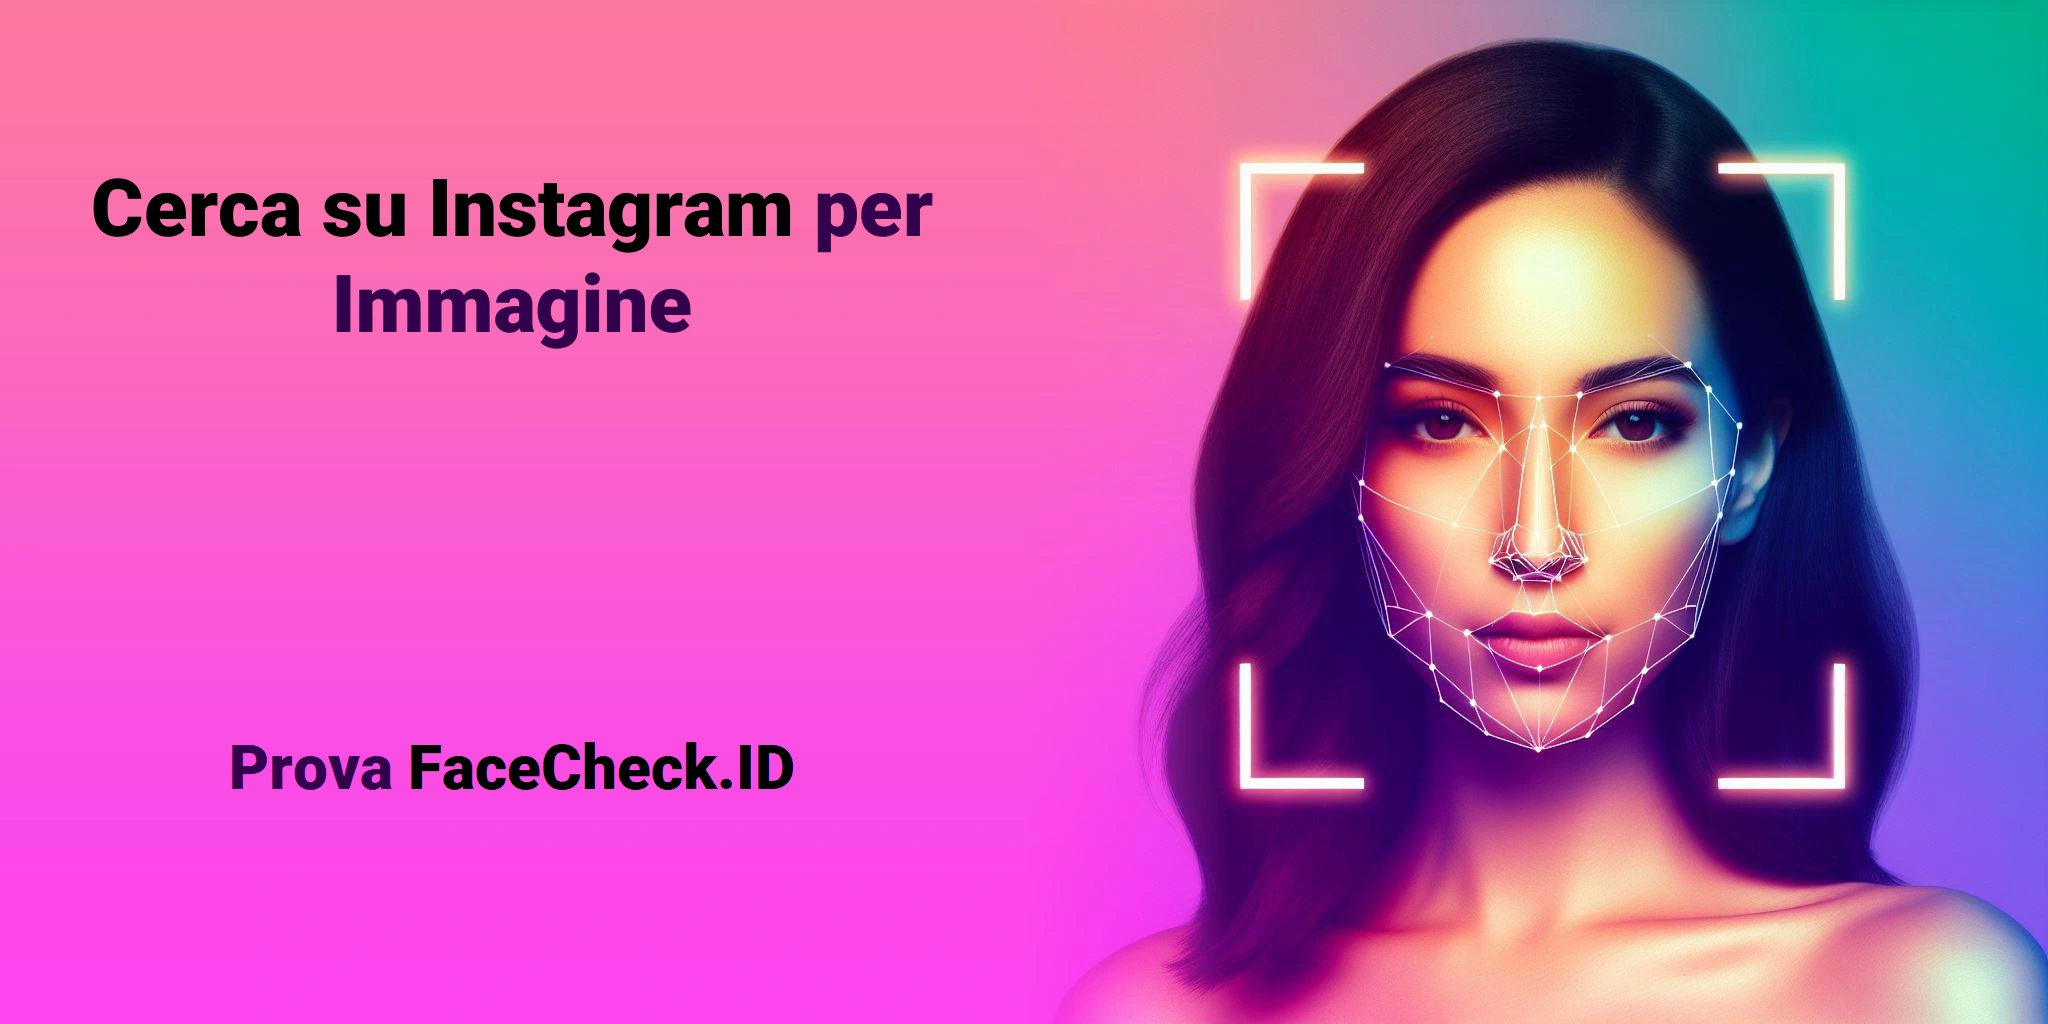 Cerca su Instagram per Immagine Prova FaceCheck.ID